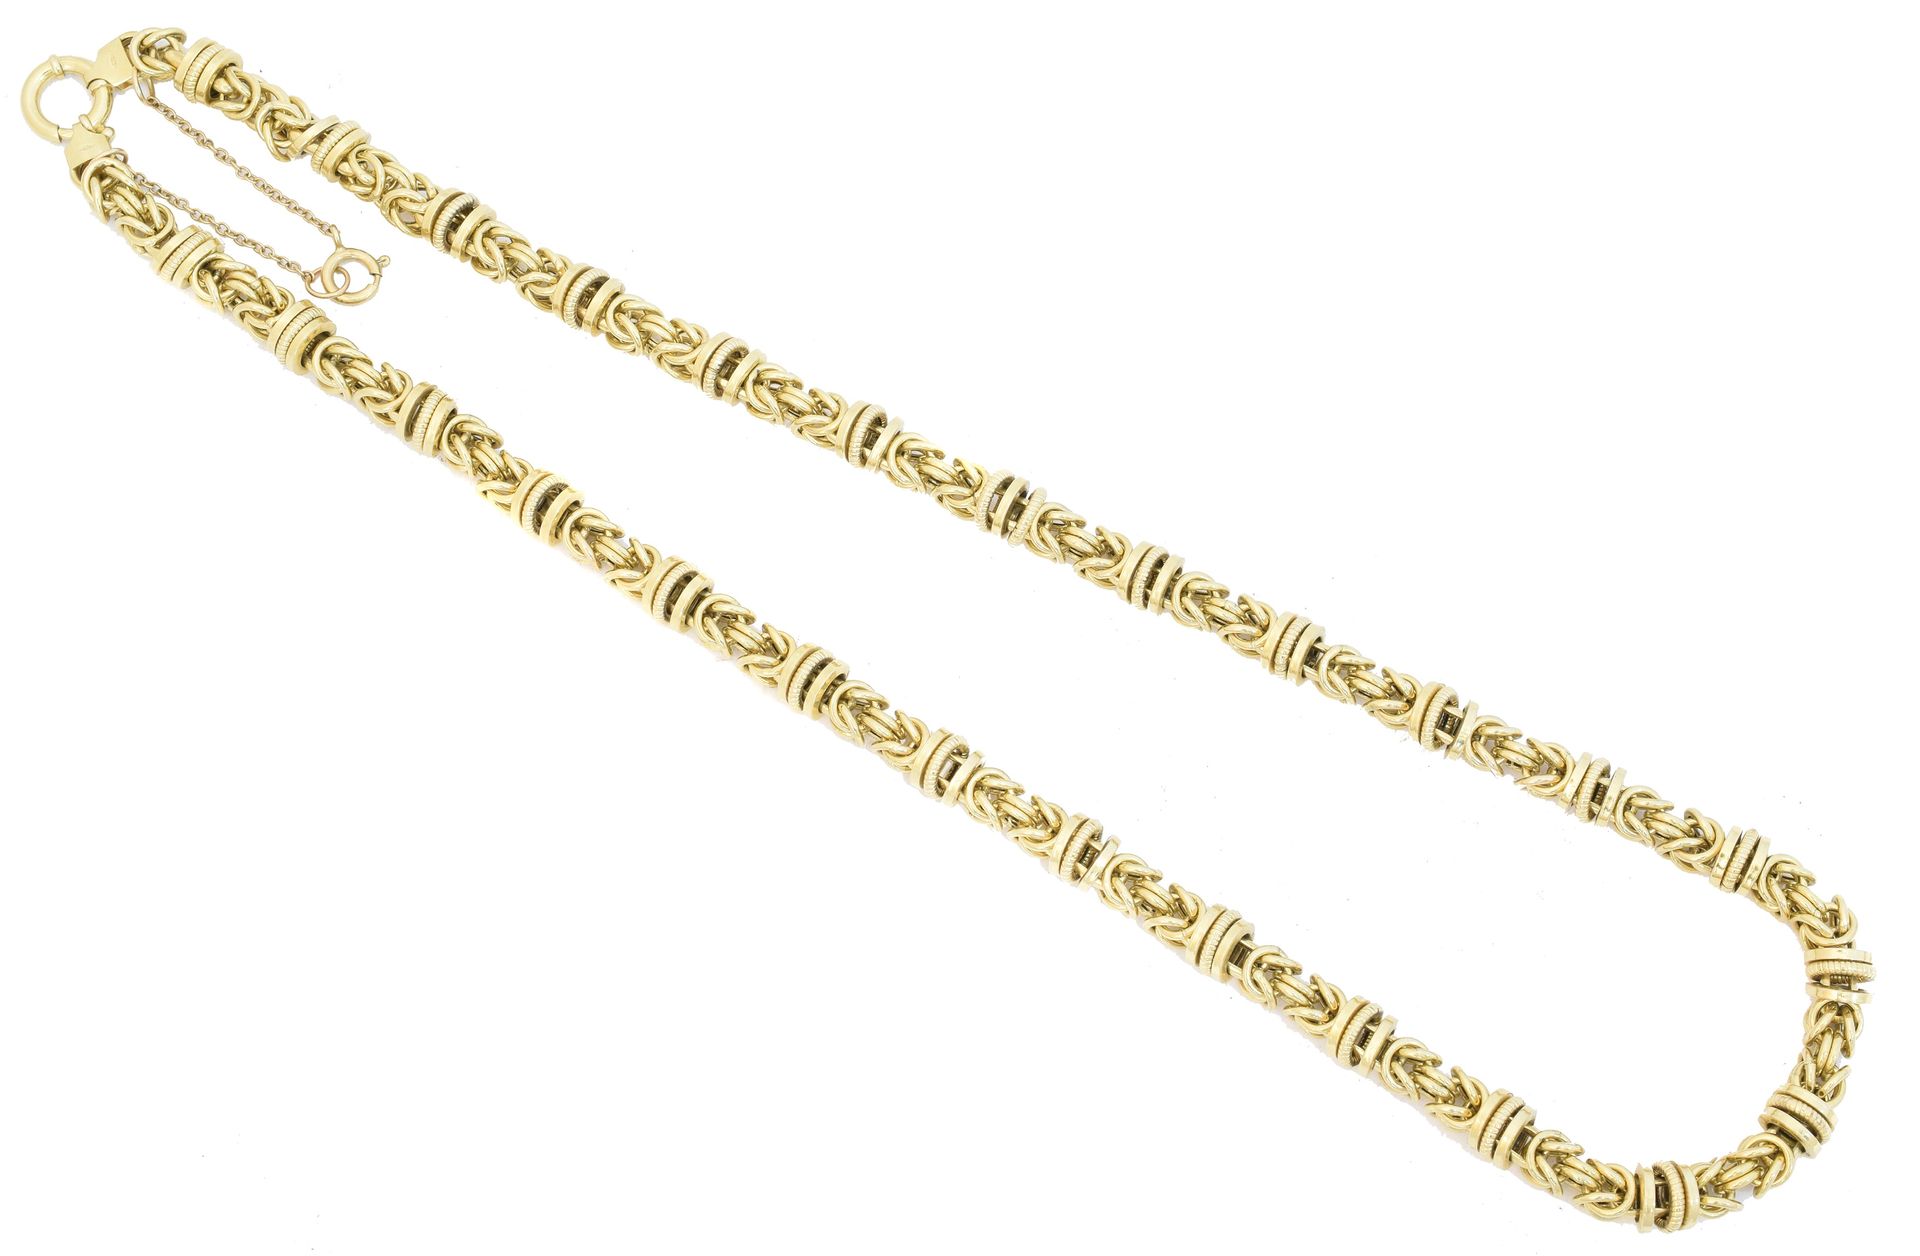 A 9ct gold chain necklace, 
Kette aus 9 Karat Gold, Gliederkette mit Federversch&hellip;